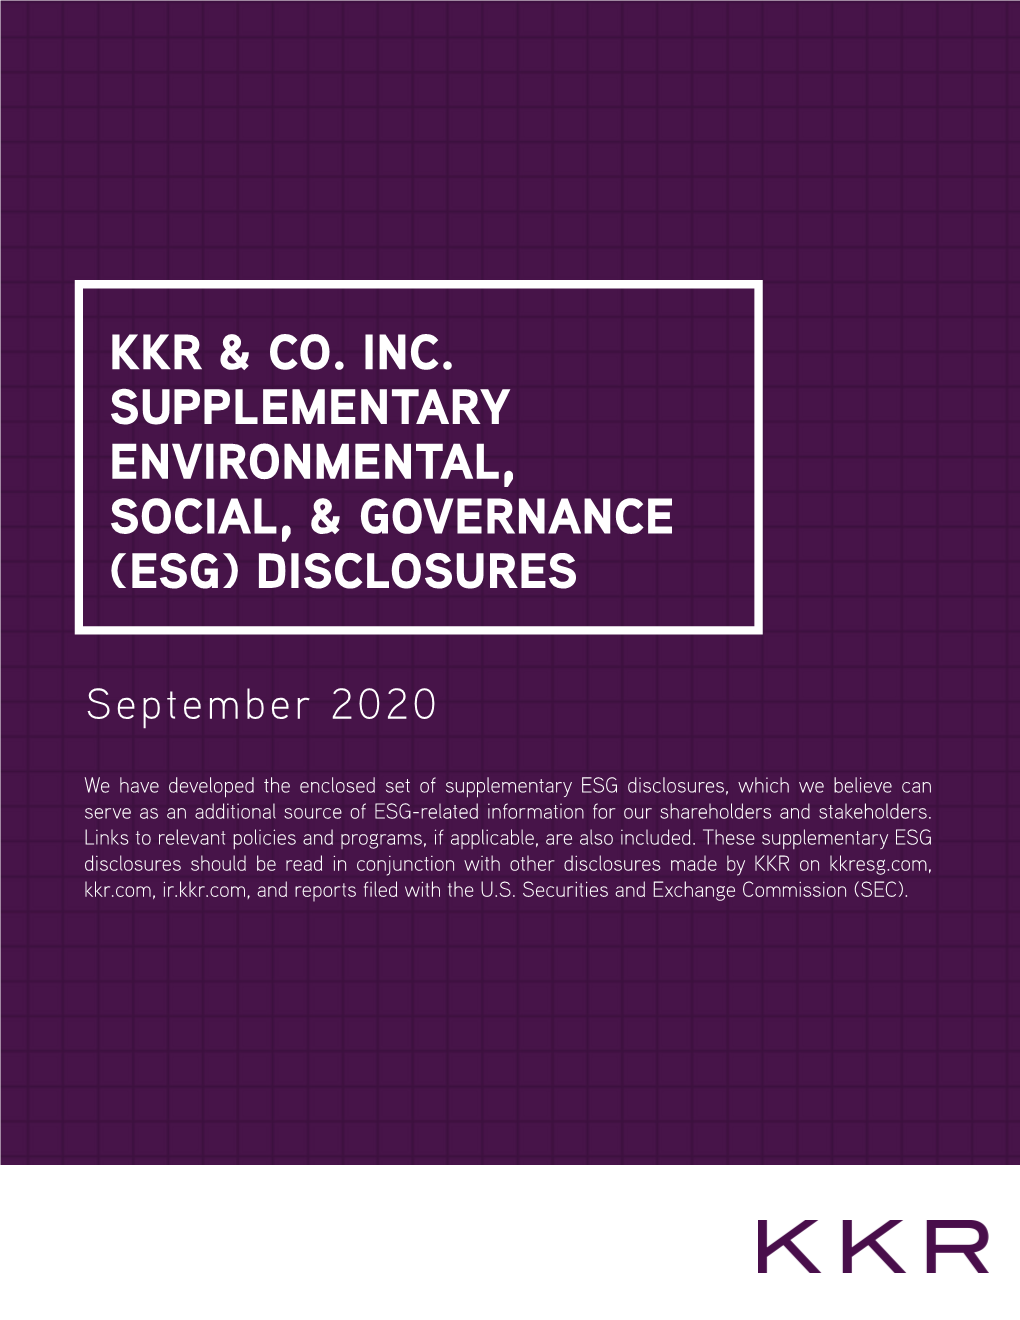 KKR Supplementary ESG Disclosures September 2020